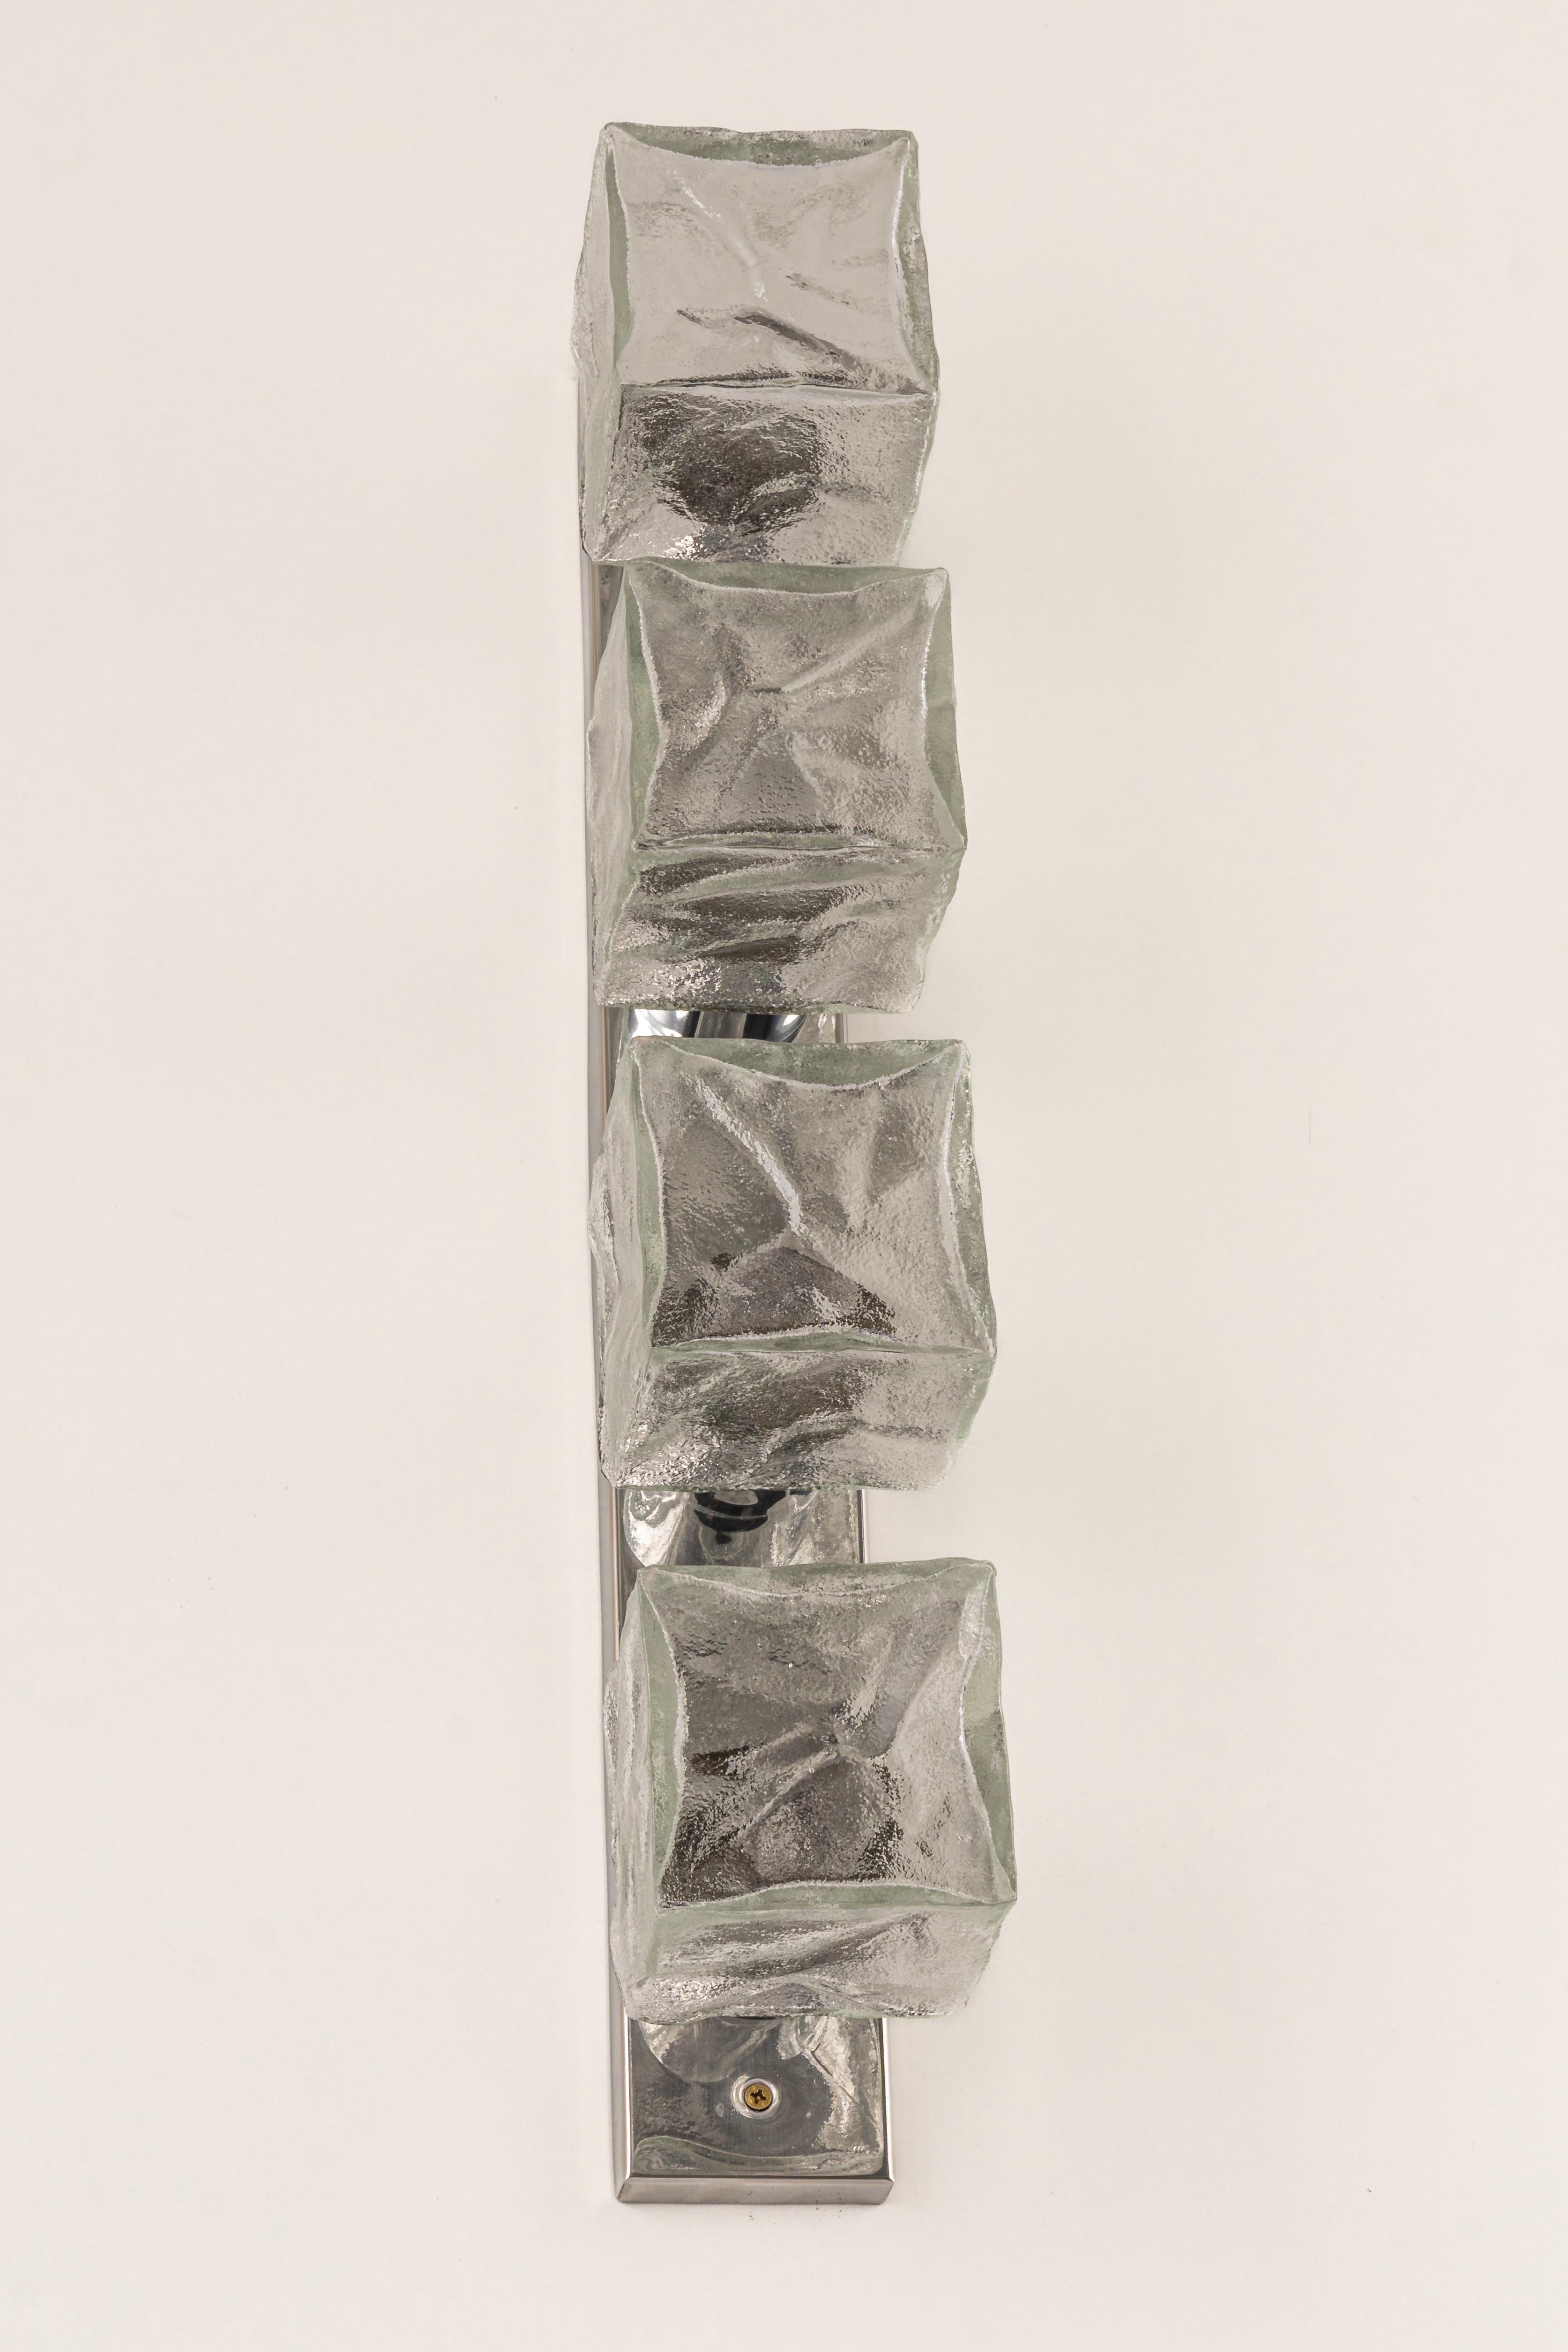 Große Wandleuchten aus Murano-Eisglas von Kalmar, Österreich, hergestellt in den 1960er Jahren.
Die Wandleuchte besteht aus einem 4 dicken Muranoglaswürfel, der an einem verchromten Metallrahmen befestigt ist.
Wunderbarer Lichteffekt.

Schwere